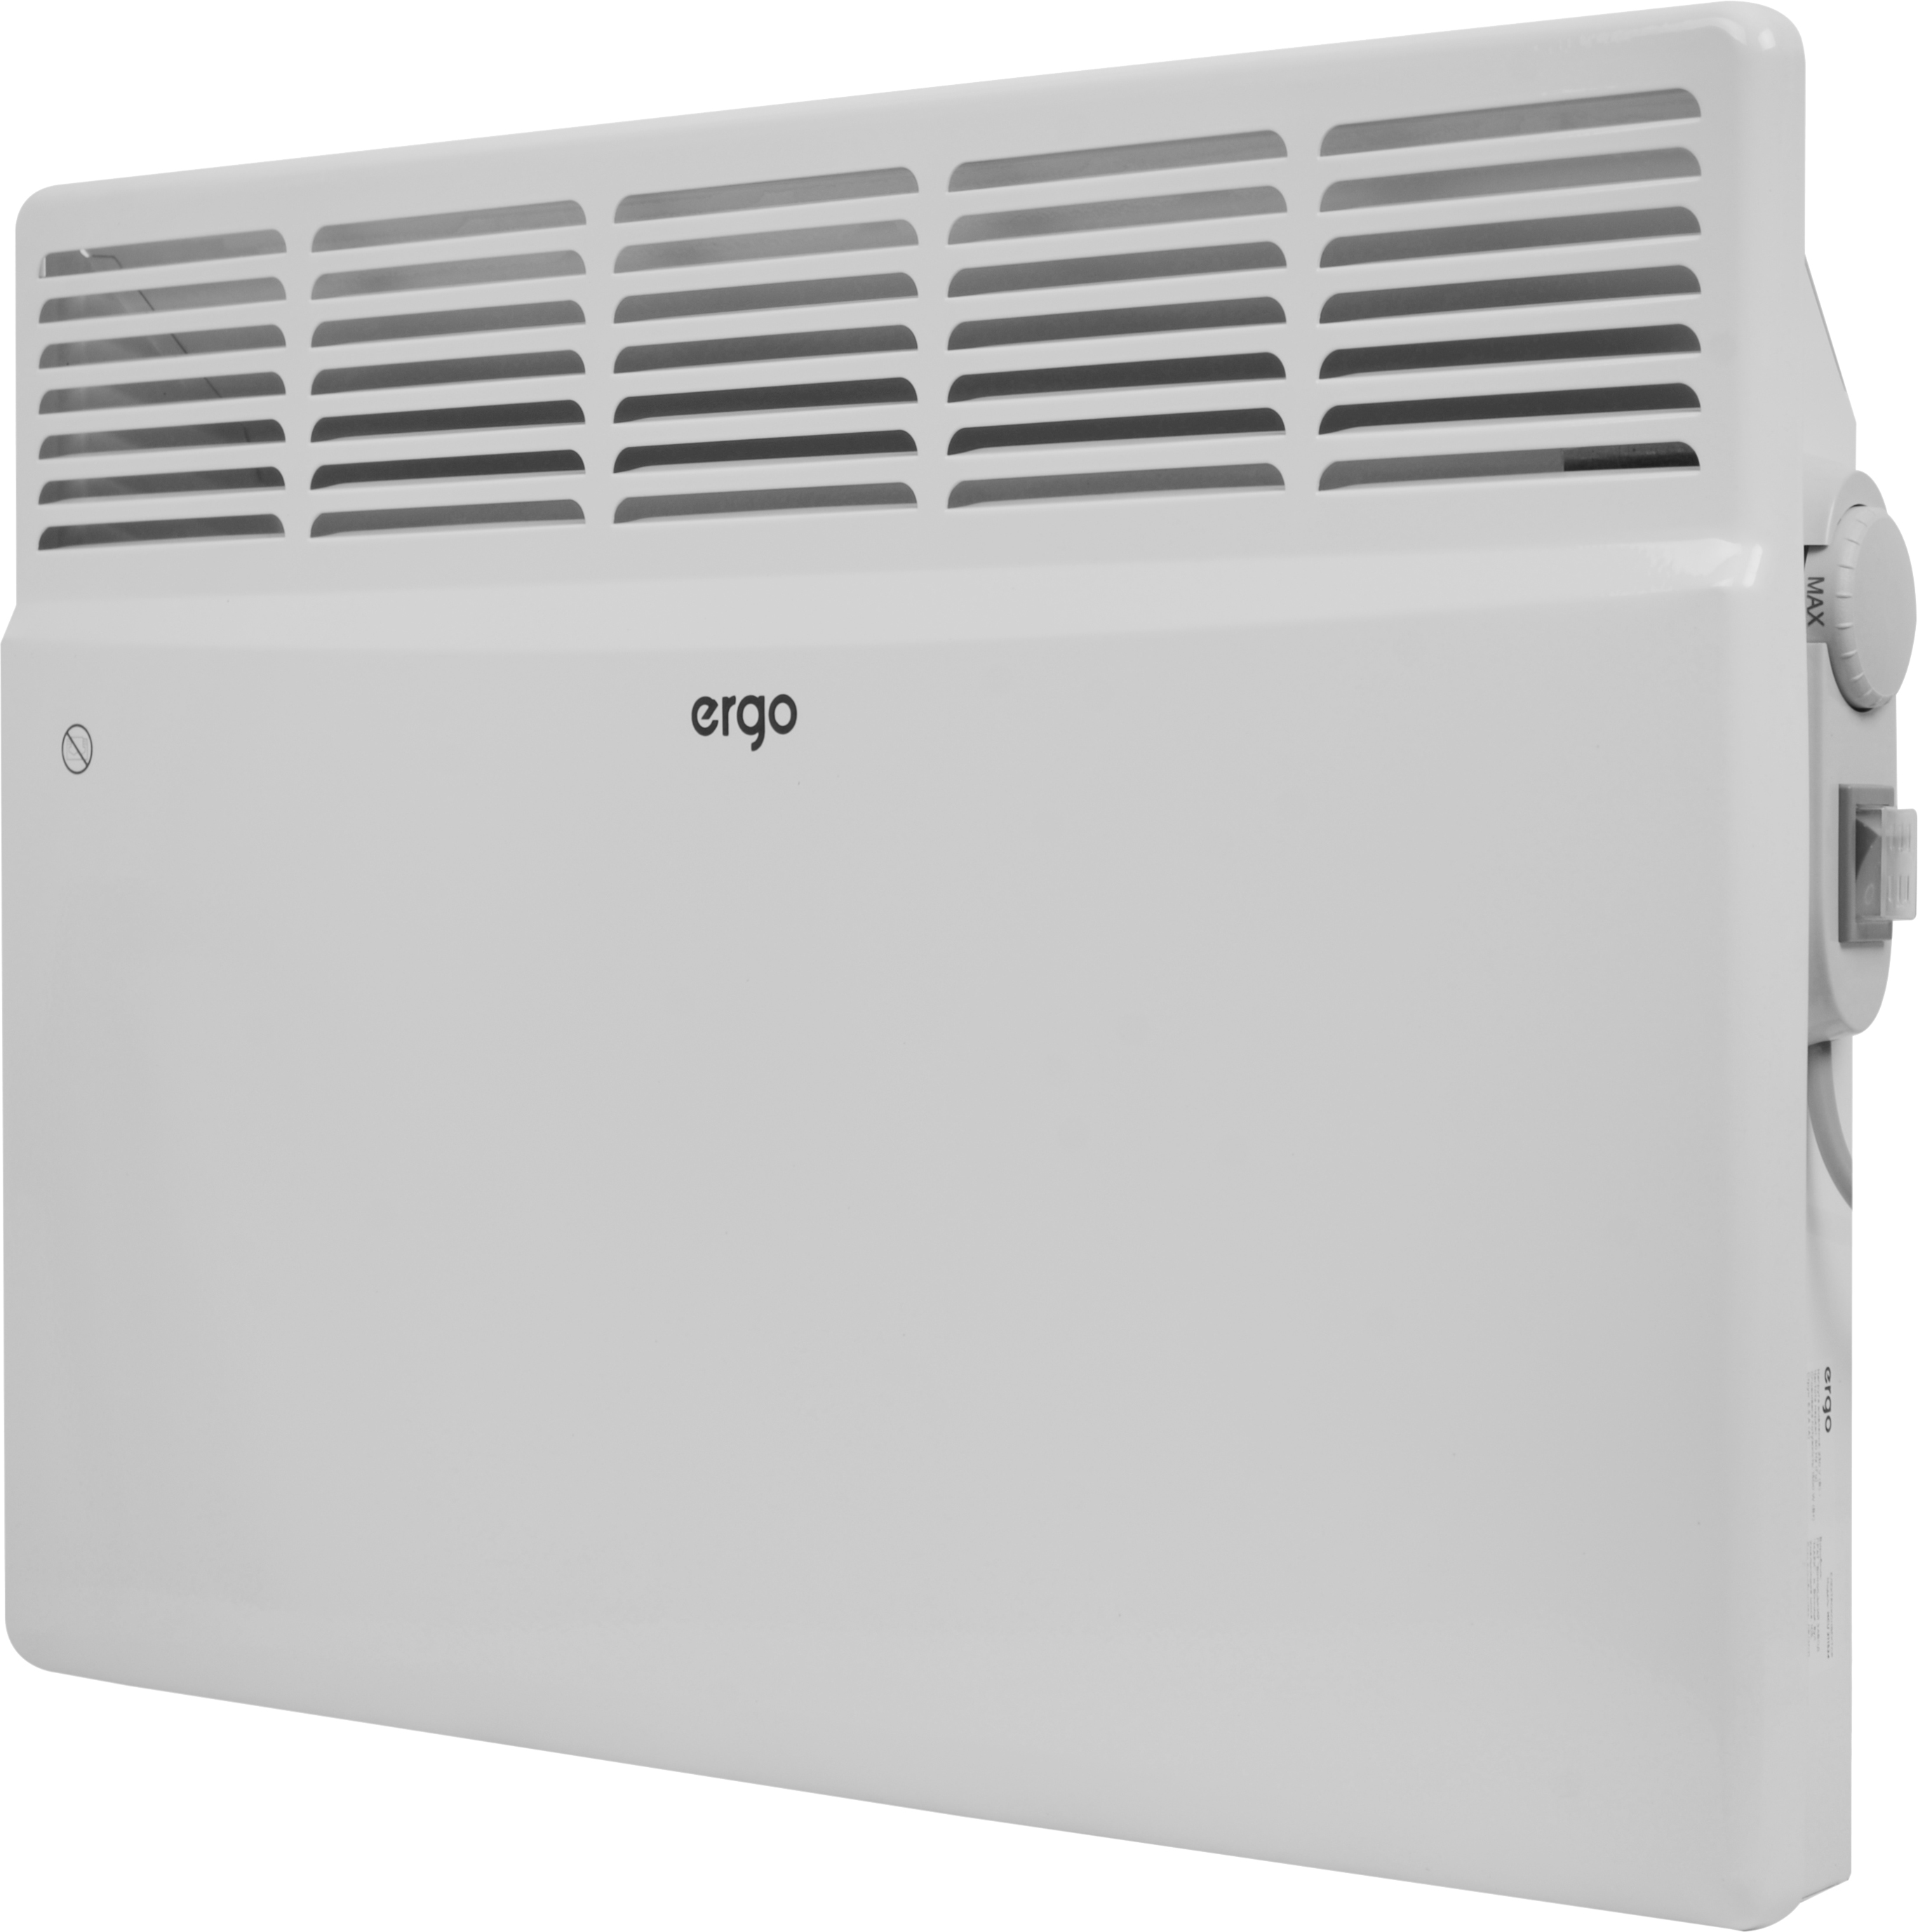 Электроконвектор Ergo мощностью 1500 Вт / 1,5 кВт Ergo HCU 211524